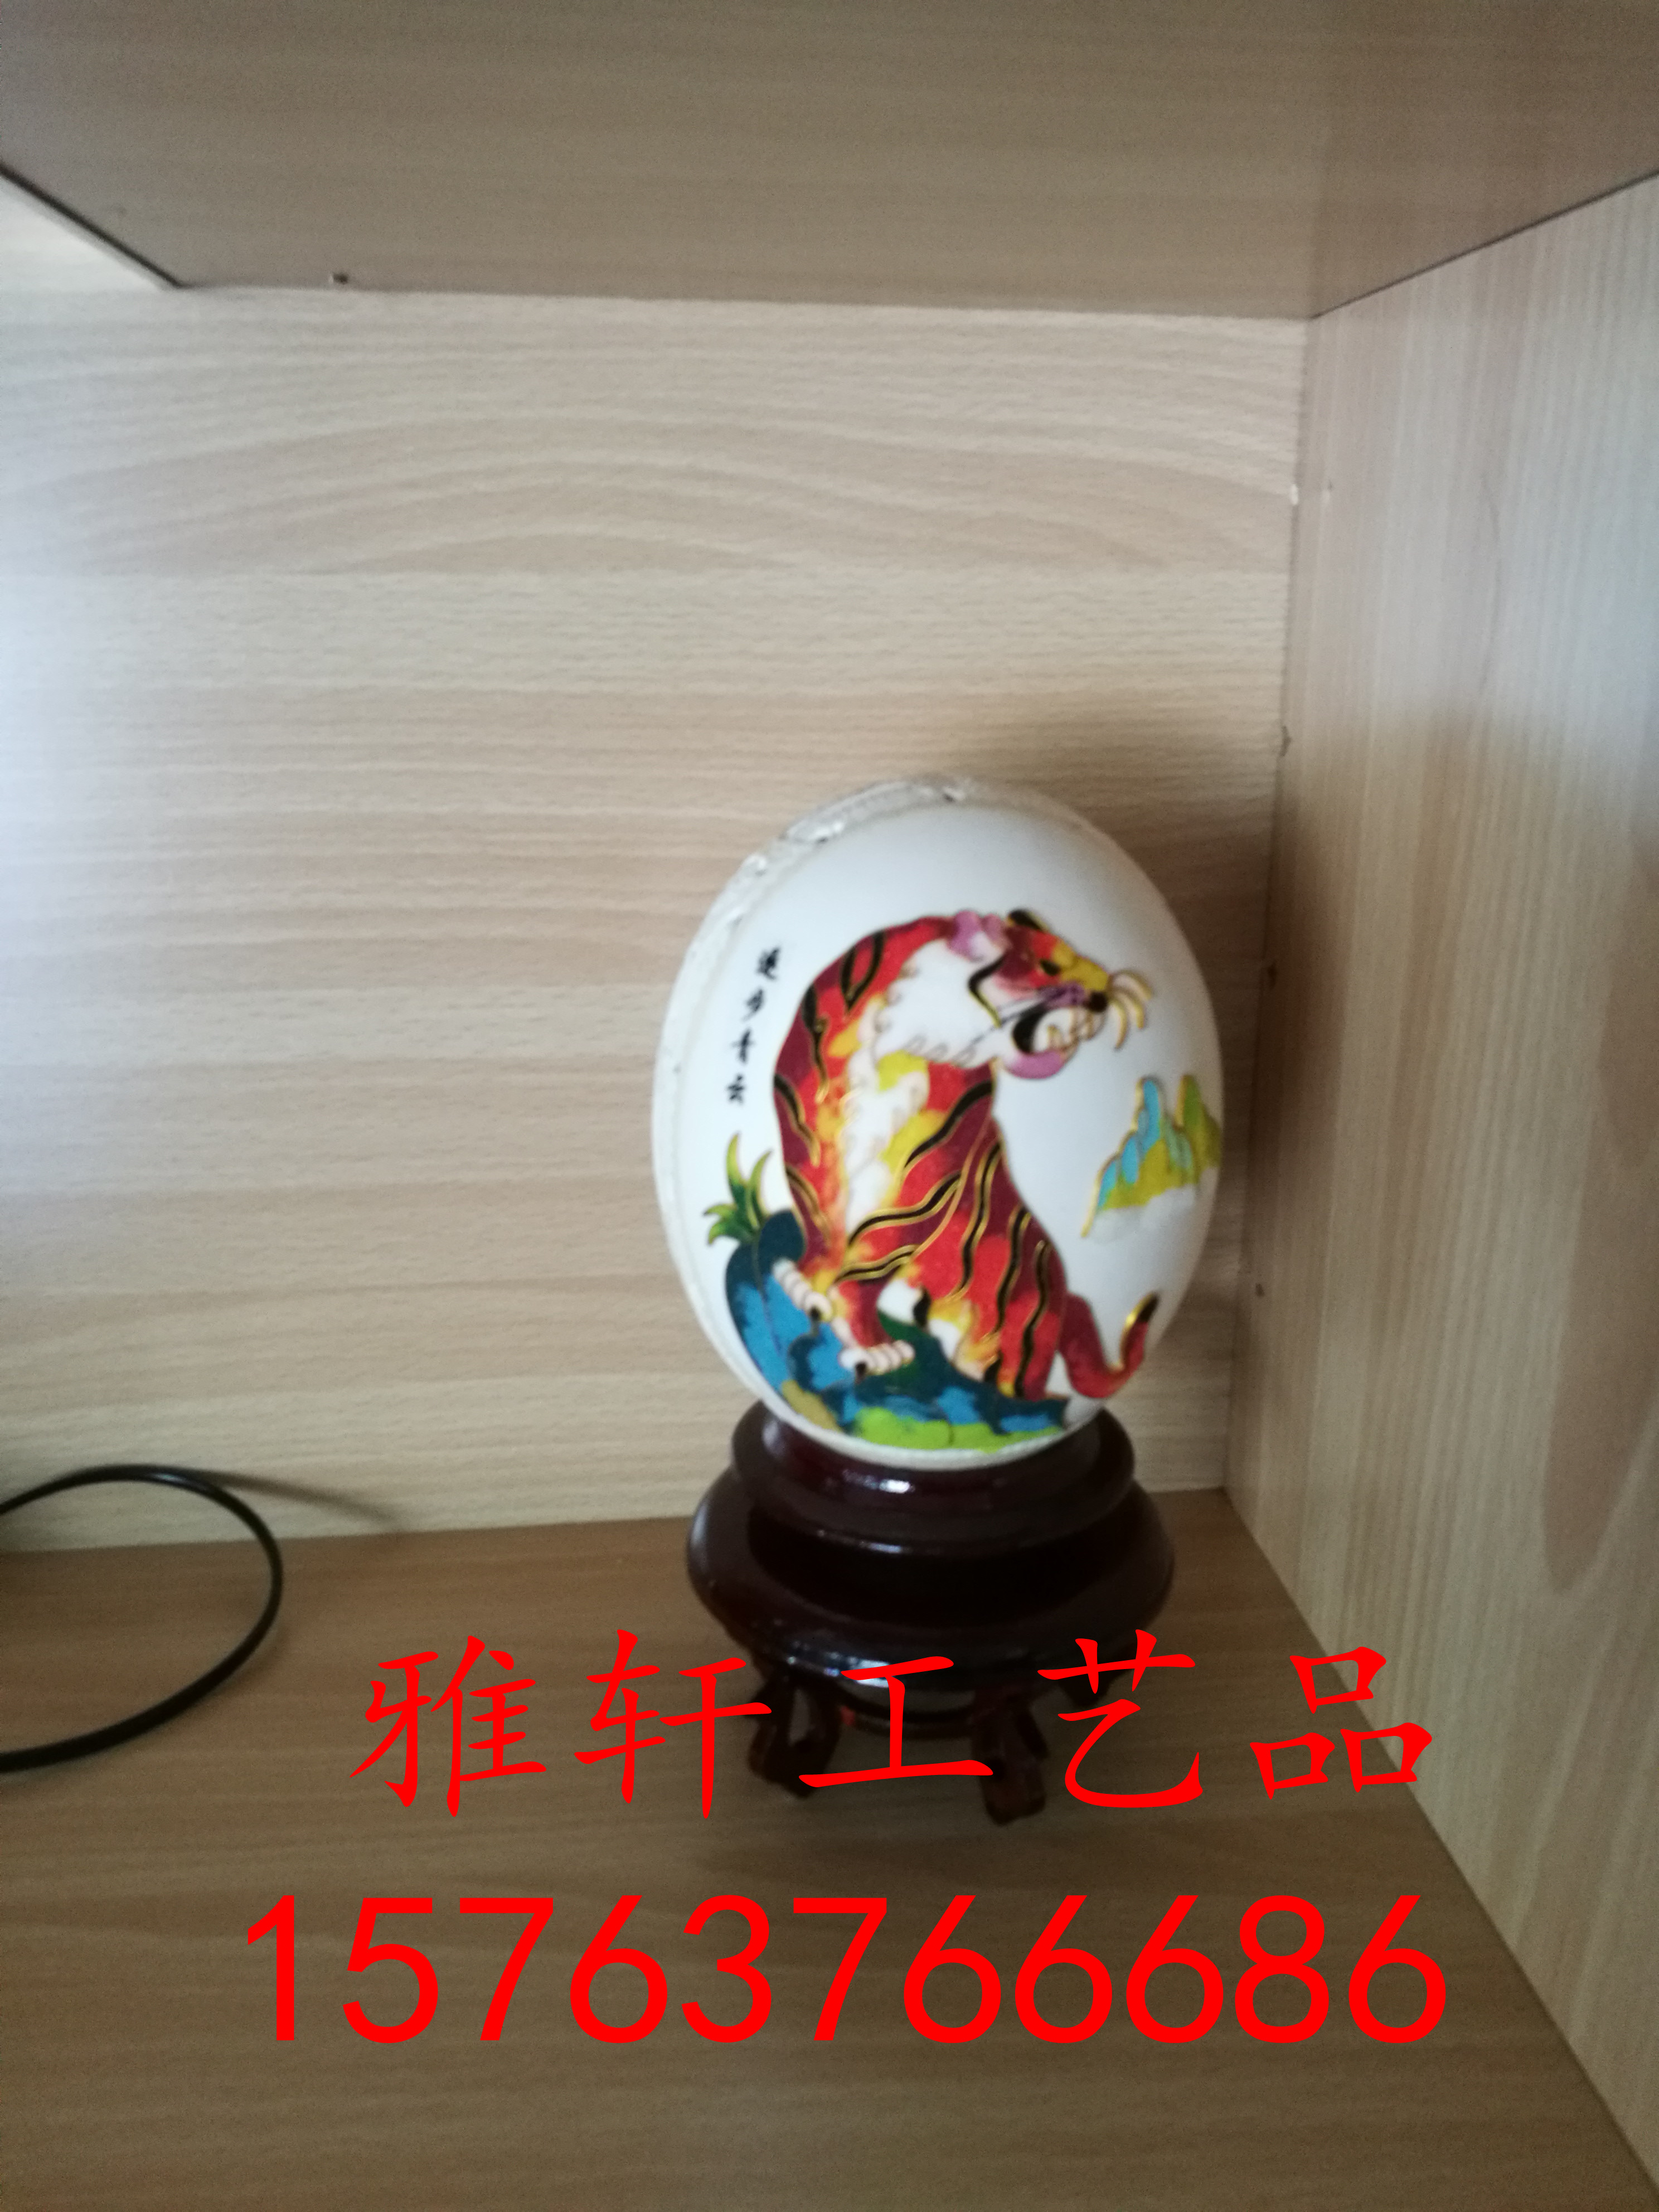 景泰蓝 蛋壳上的艺术 其他民间工艺品 风范 纯手工鸵鸟蛋雕工艺品